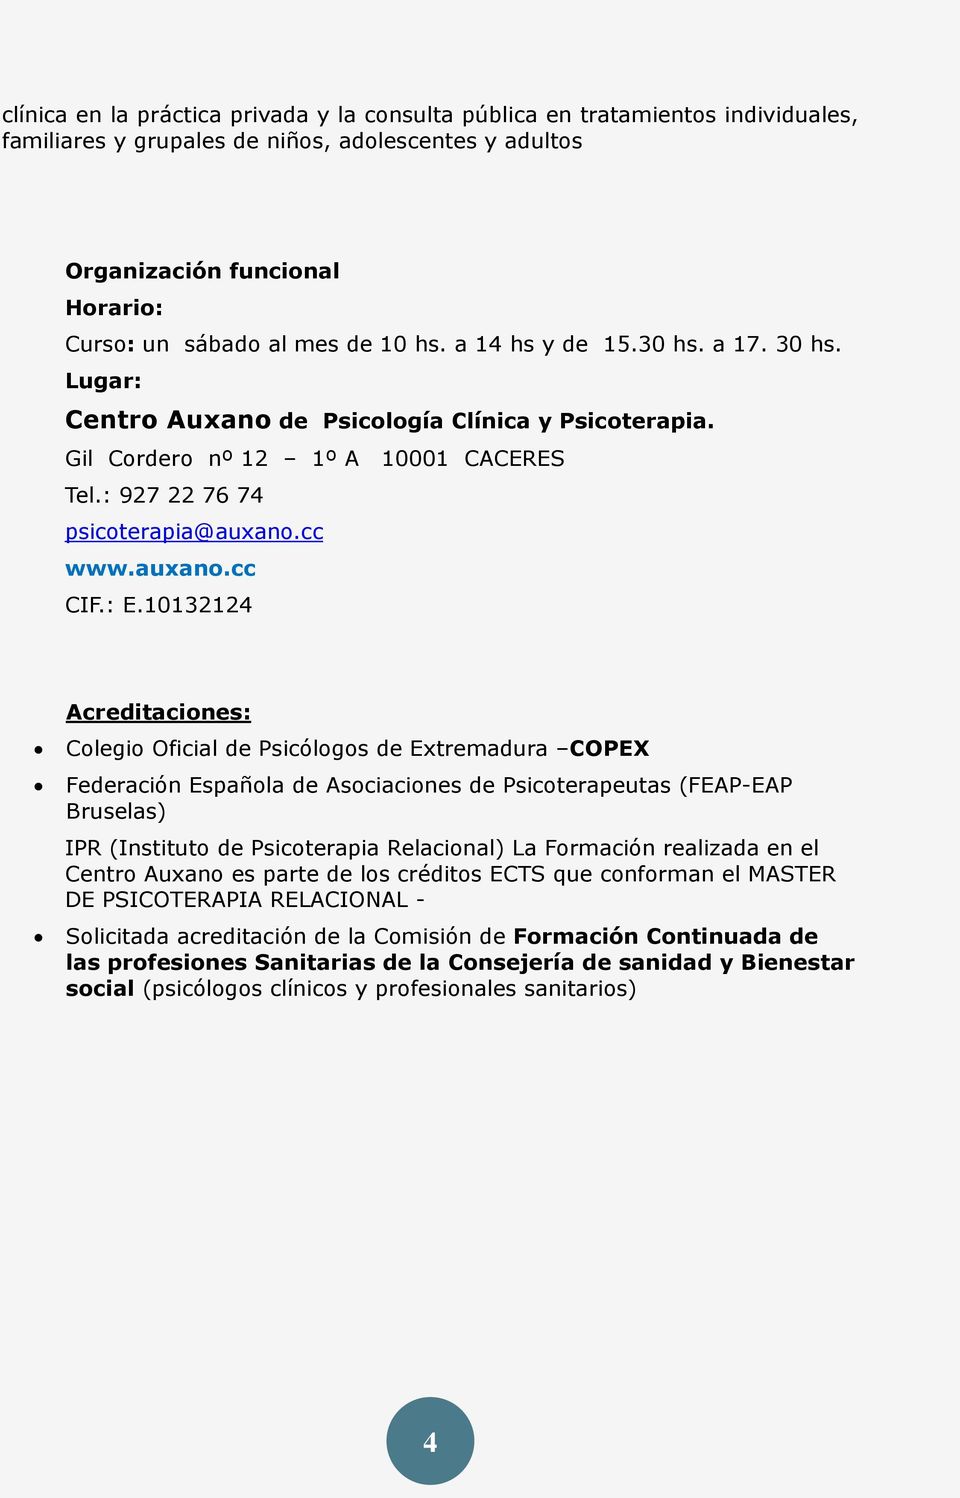 10132124 Acreditaciones: Colegio Oficial de Psicólogos de Extremadura COPEX Federación Española de Asociaciones de Psicoterapeutas (FEAP-EAP Bruselas) IPR (Instituto de Psicoterapia Relacional) La